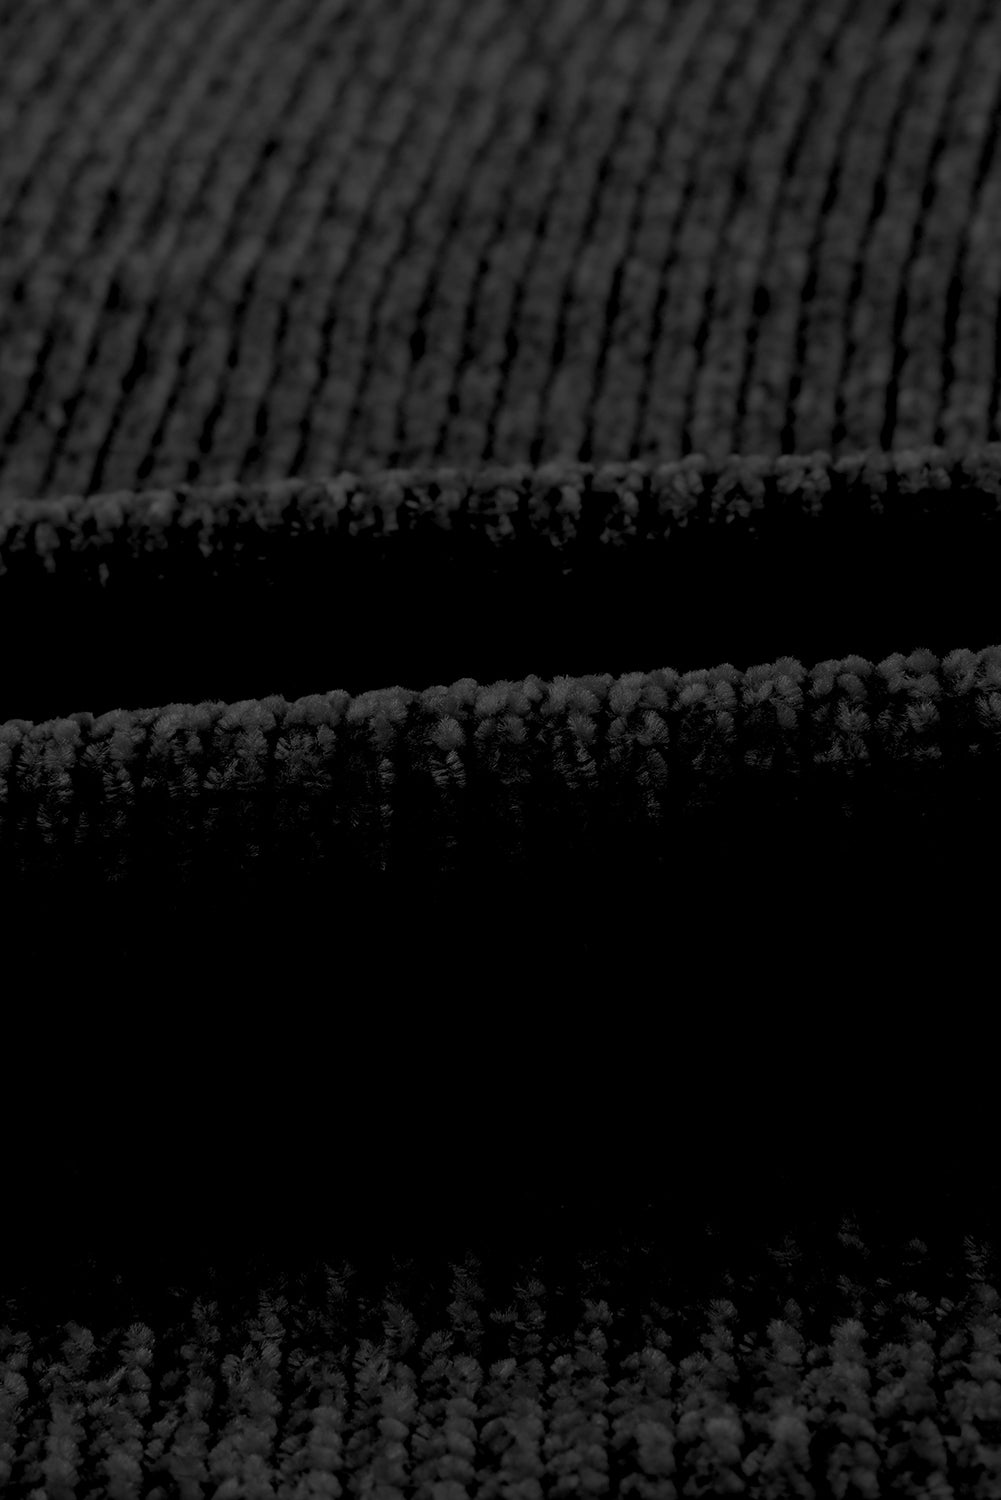 Schwarzer Pullover-Cardigan mit Knöpfen vorne und Taschen